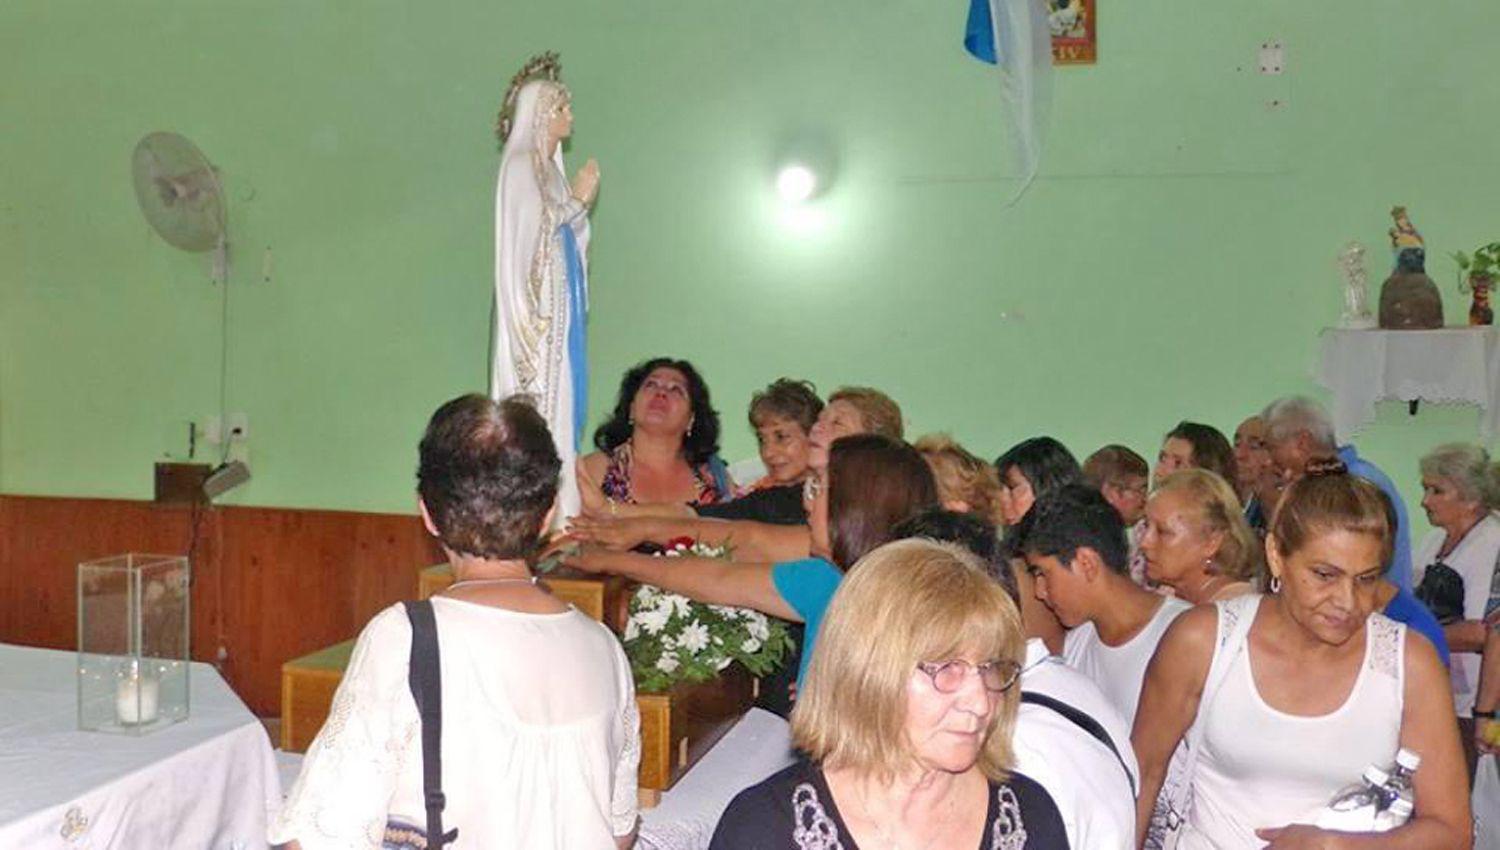 Este s�bado se har� la bajada de la sagrada imagen rezo del
Rosario a las 20 y misa a las 2030 con el tema La familia es casa de esperanza